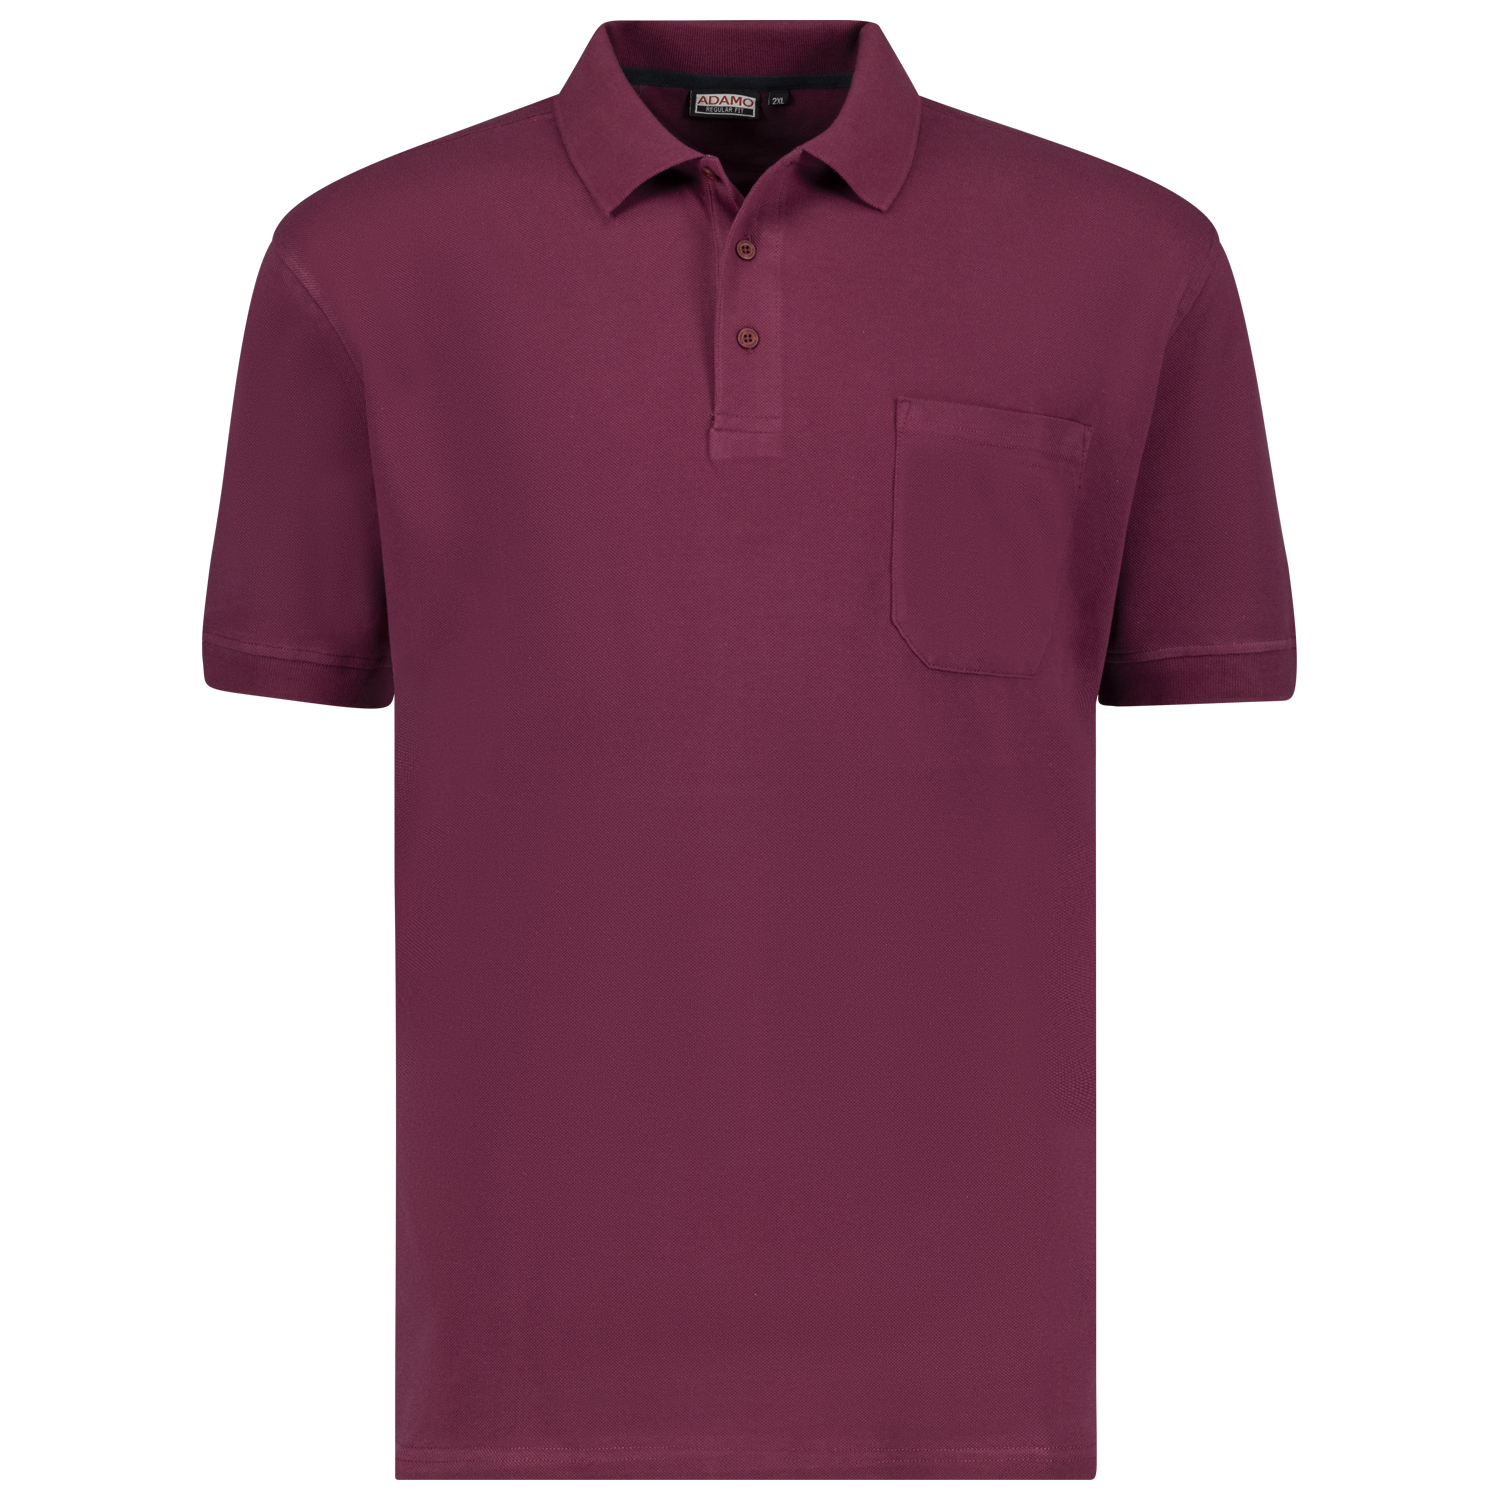 Brombeerrotes Kurzarm Polo Shirt KENO von ADAMO in Pique Qualität für Herren in großen Größen bis 10XL